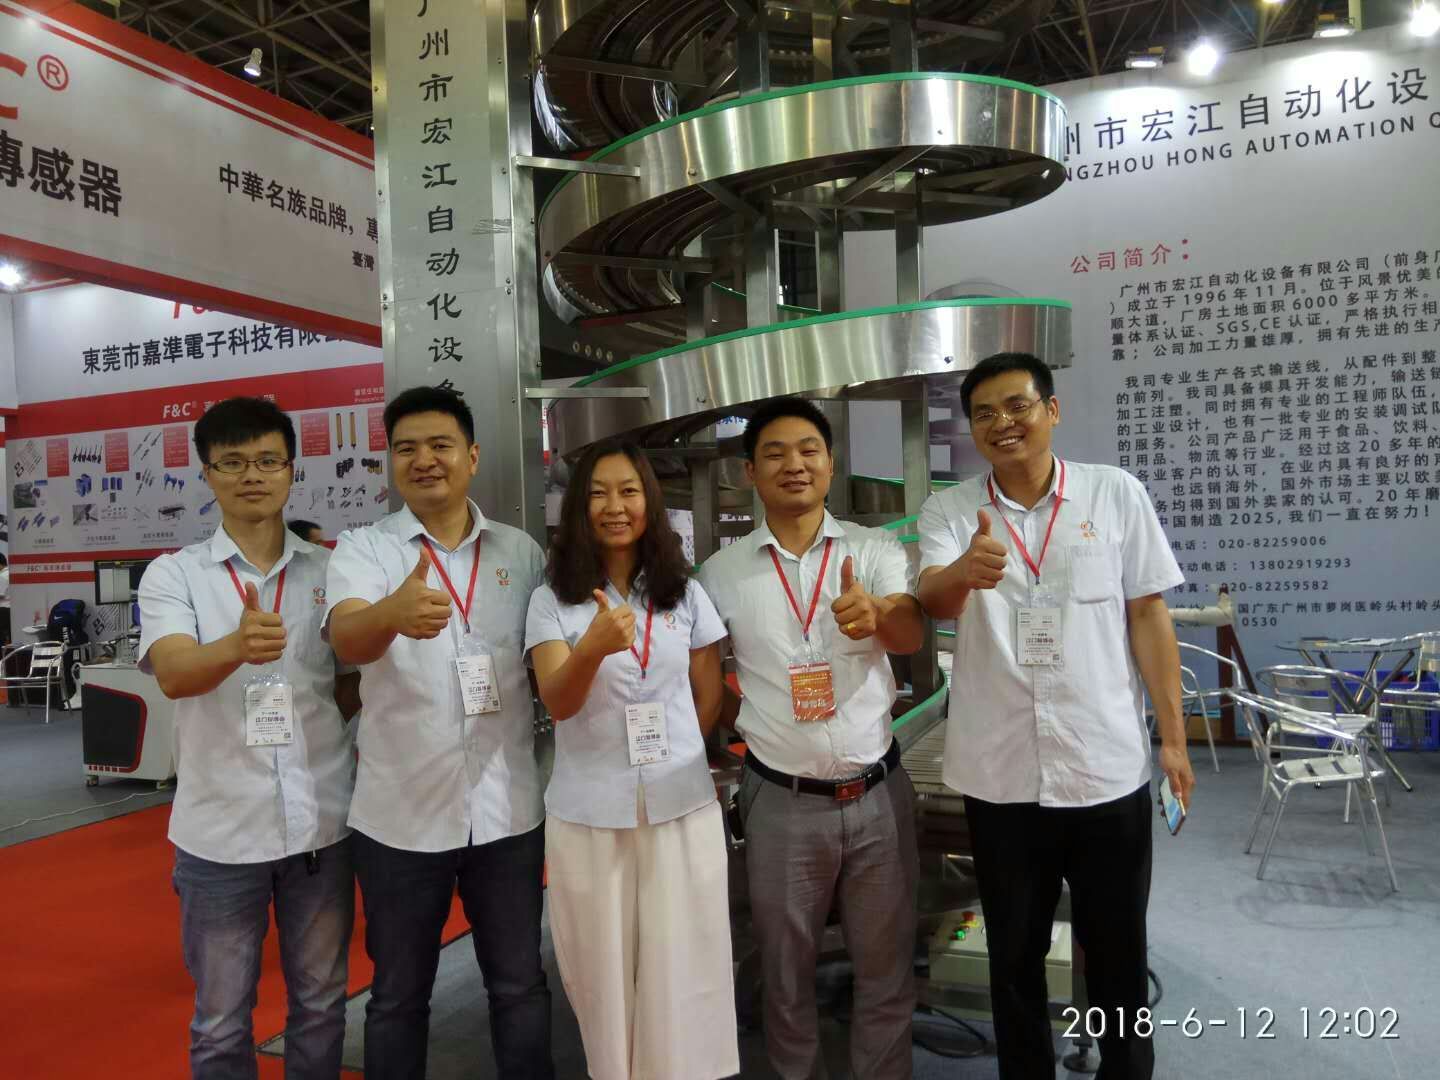 وحضرت قوانغتشو هونغ جيانغ ، باعتبارها الشركة المصنعة الأكثر شعبية للناقلات ، معرض دونغقوان للروبوتات والأتمتة 2018،6